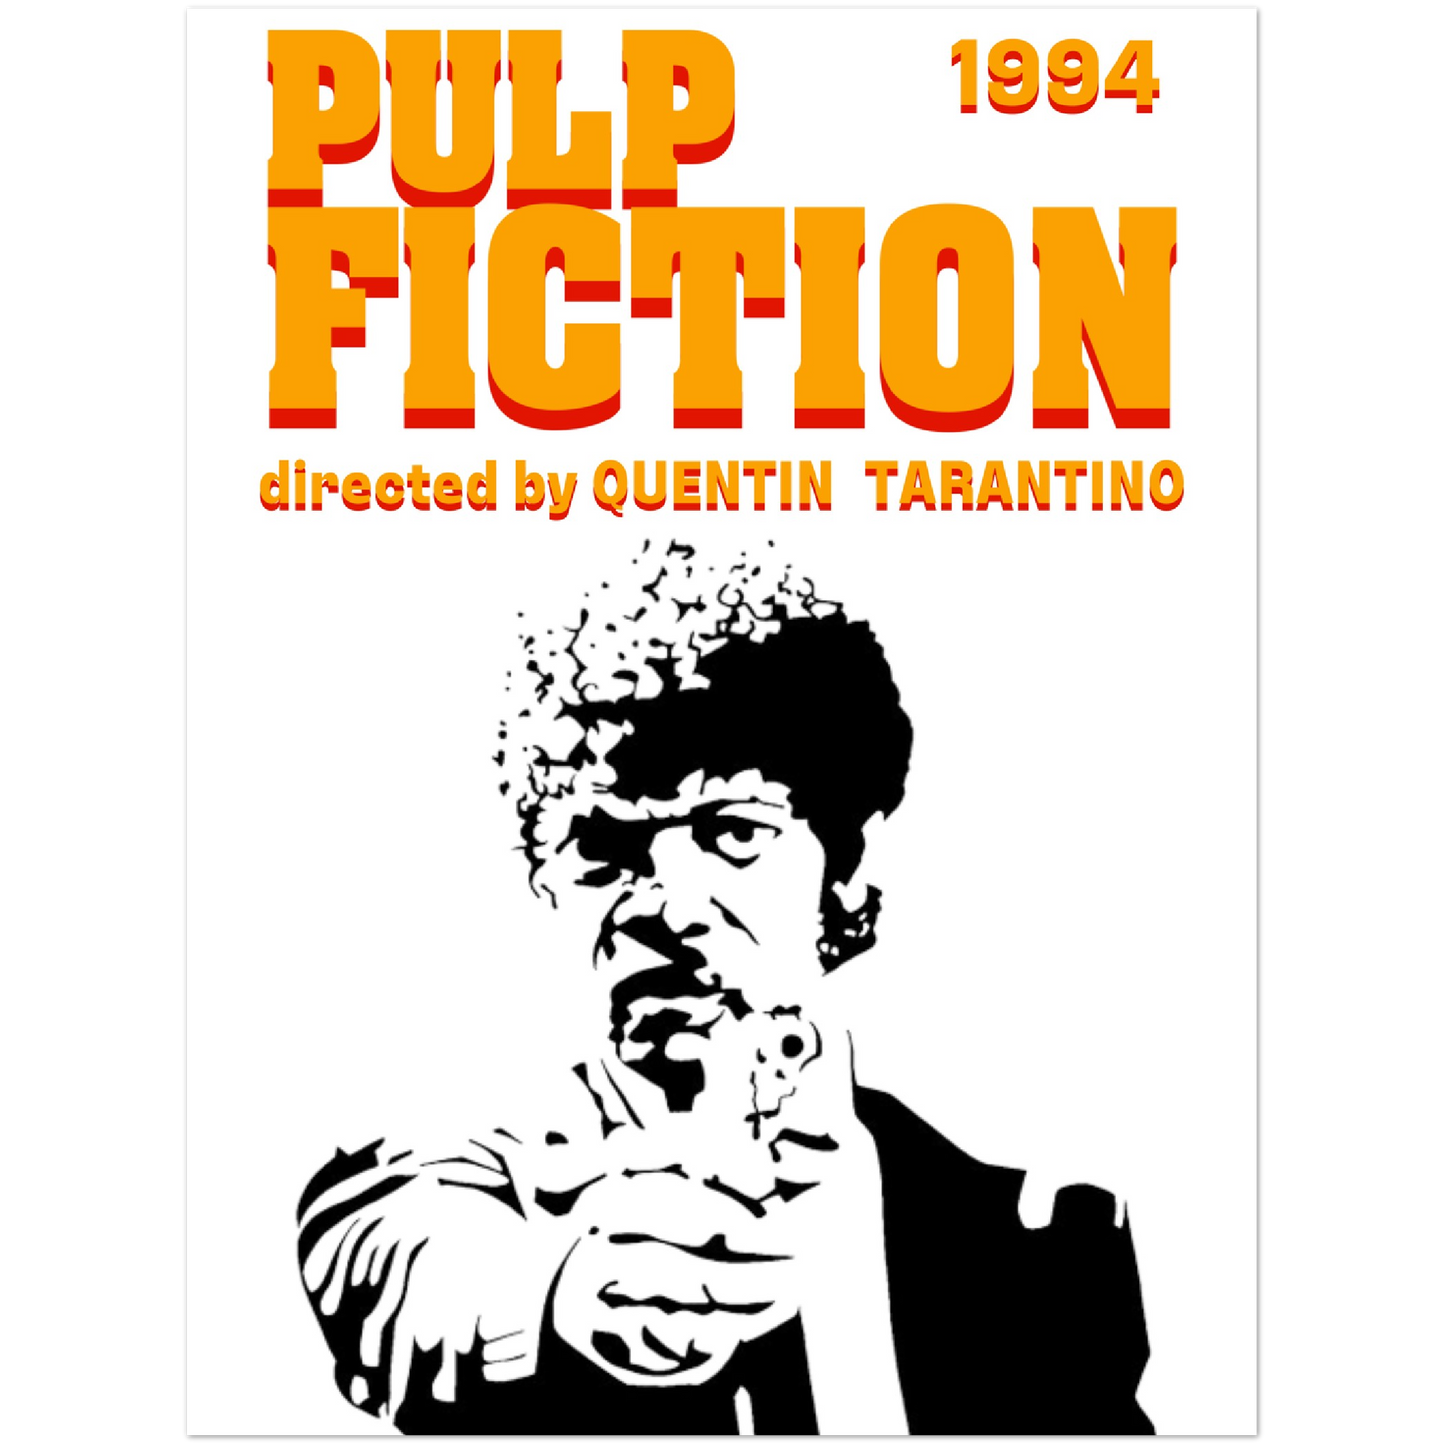 Pulp Fiction - Silhouette Design